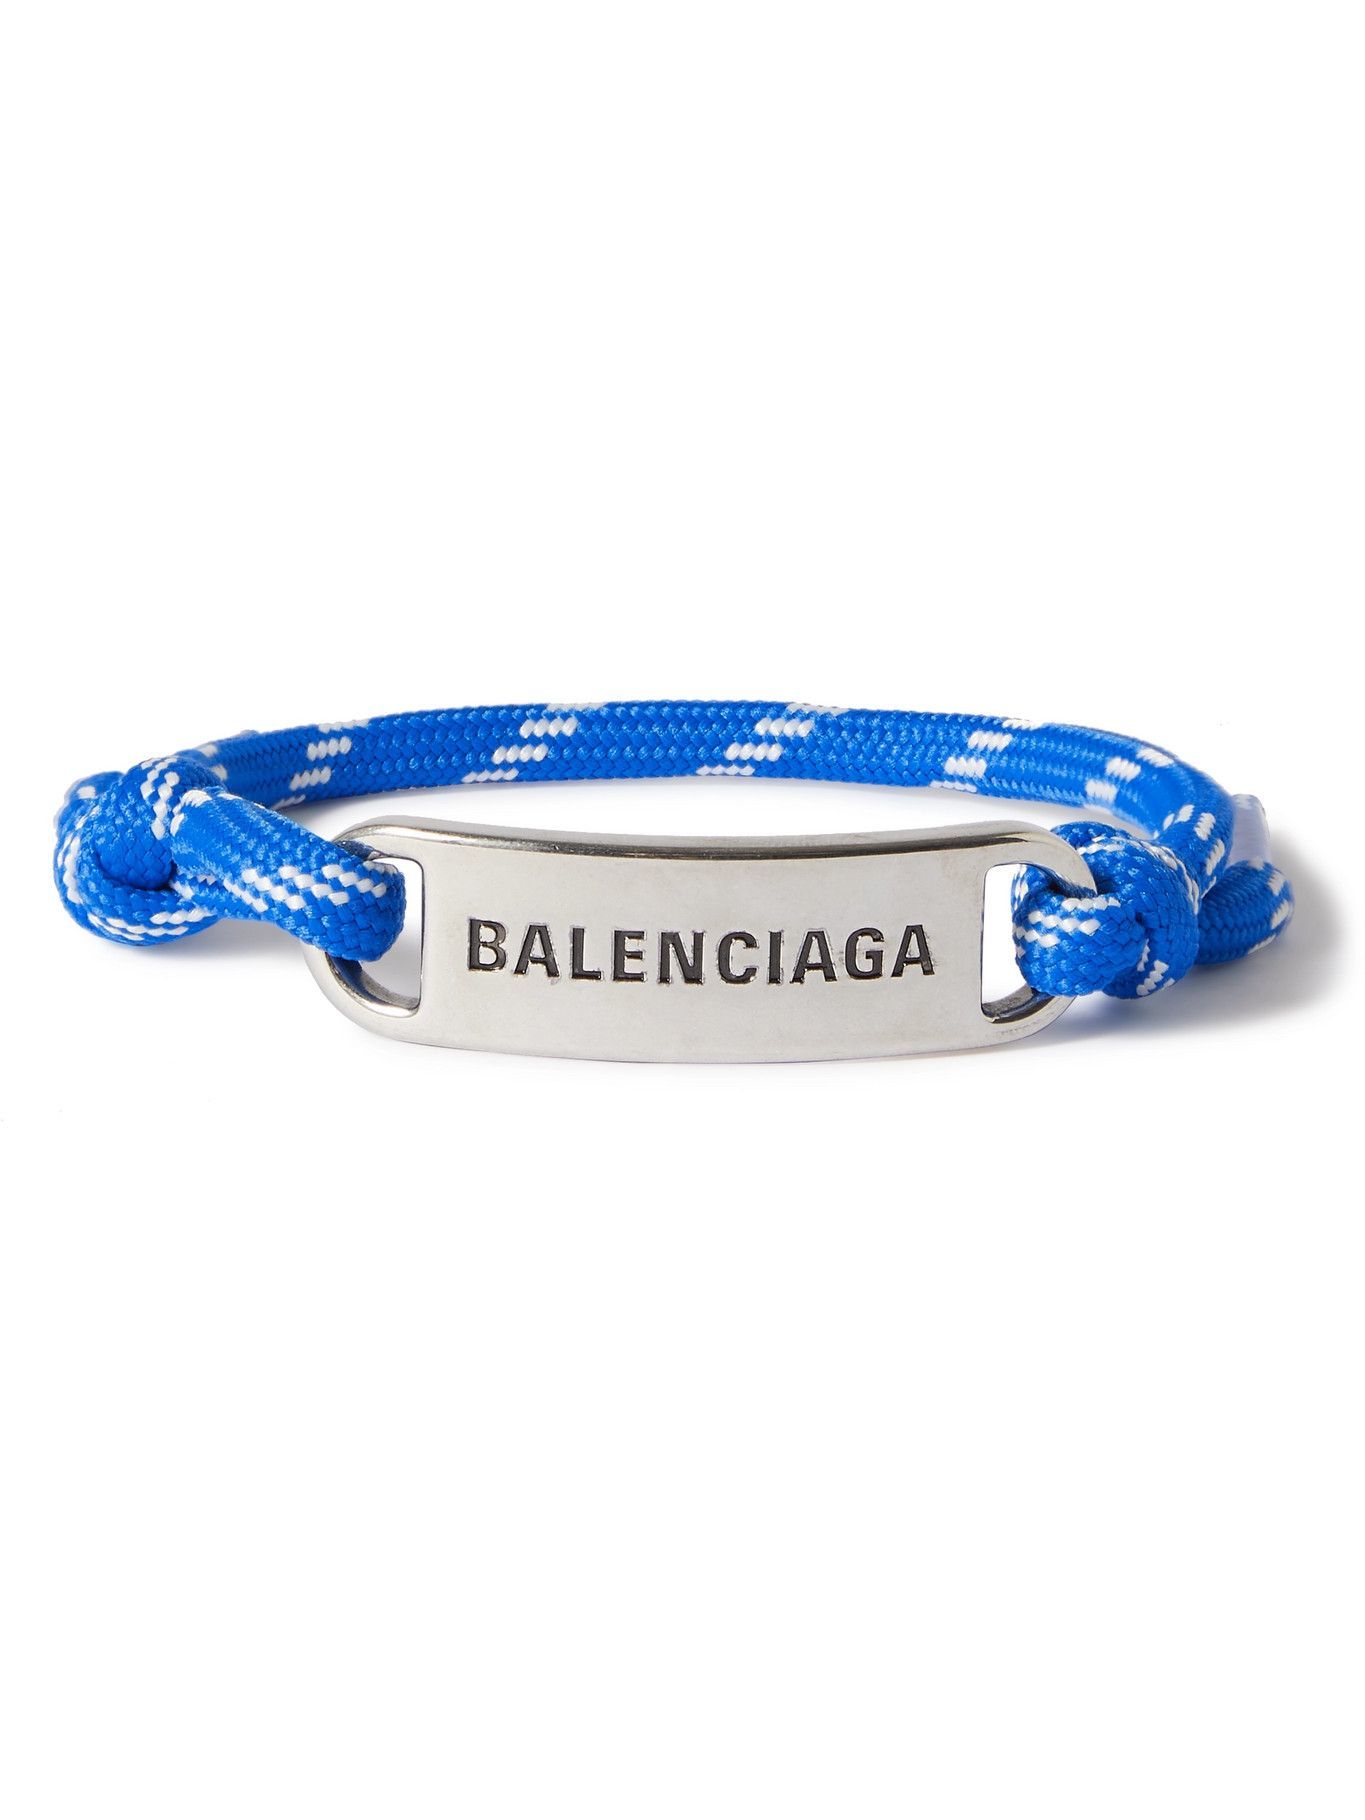 BALENCIAGA - Rope and Silver-Tone Bracelet Balenciaga